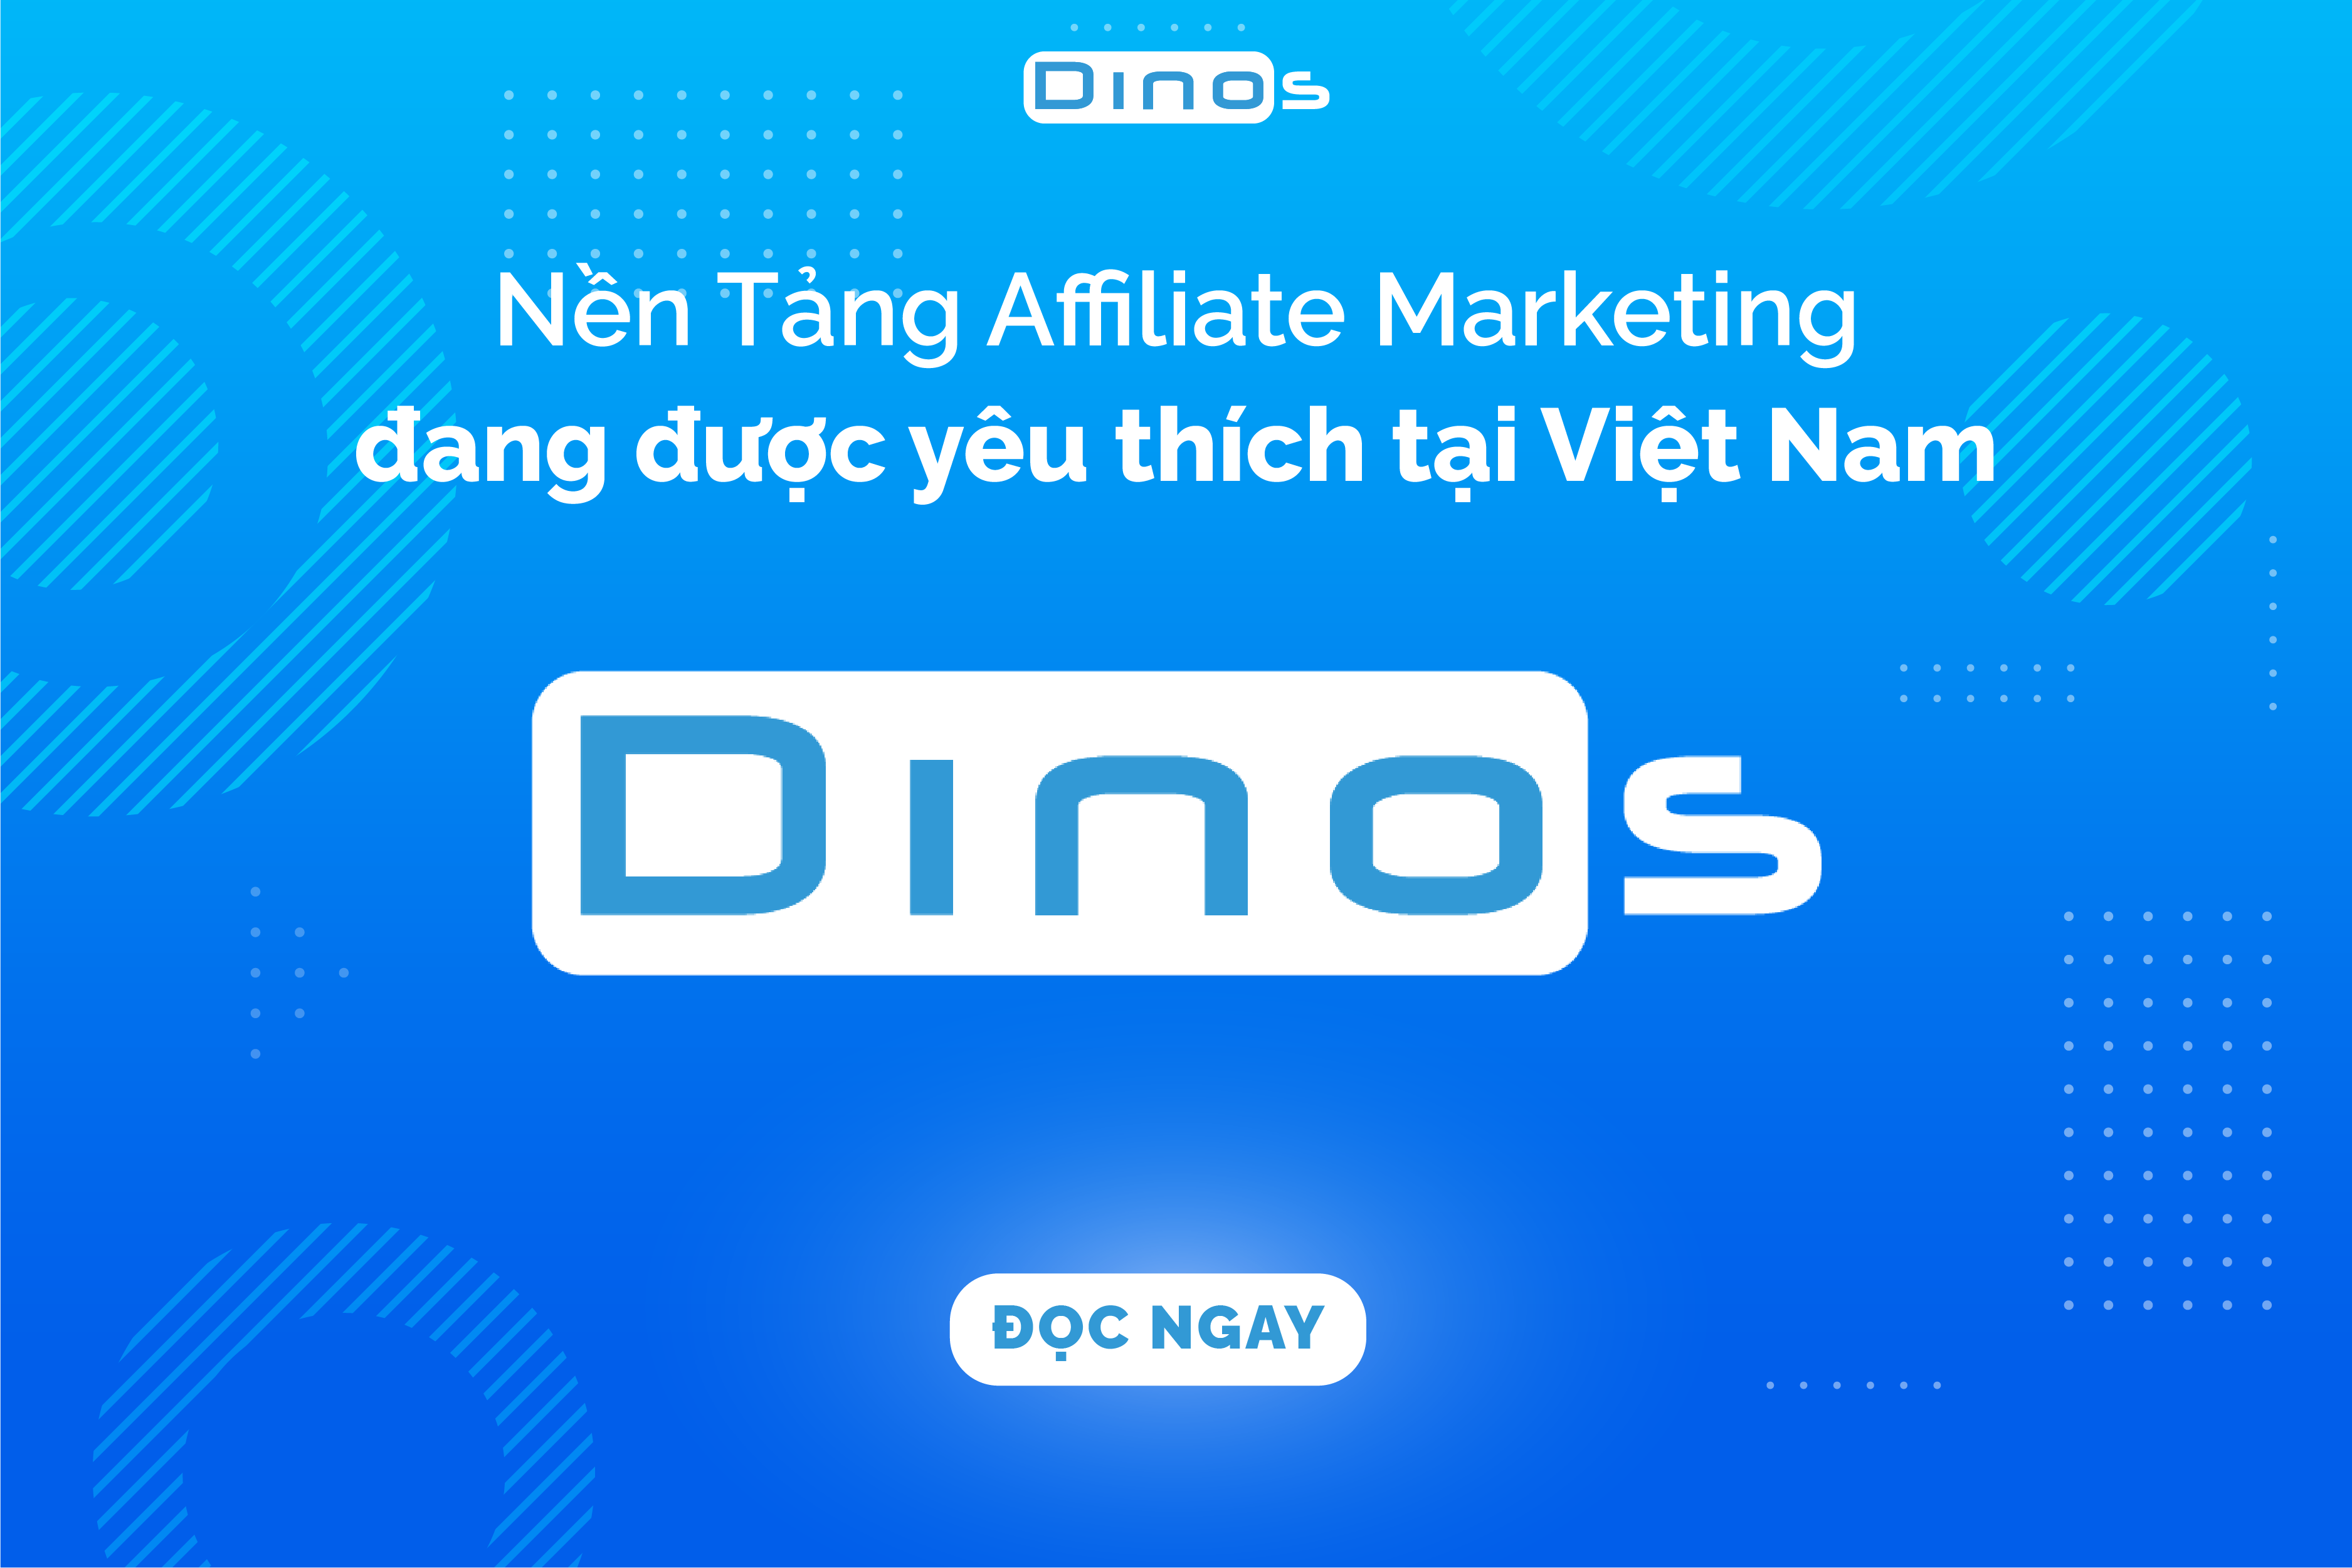 Dinos Việt Nam – Nền Tảng Tiếp Thị Liên Kết Được Yêu Thích Tại Việt Nam